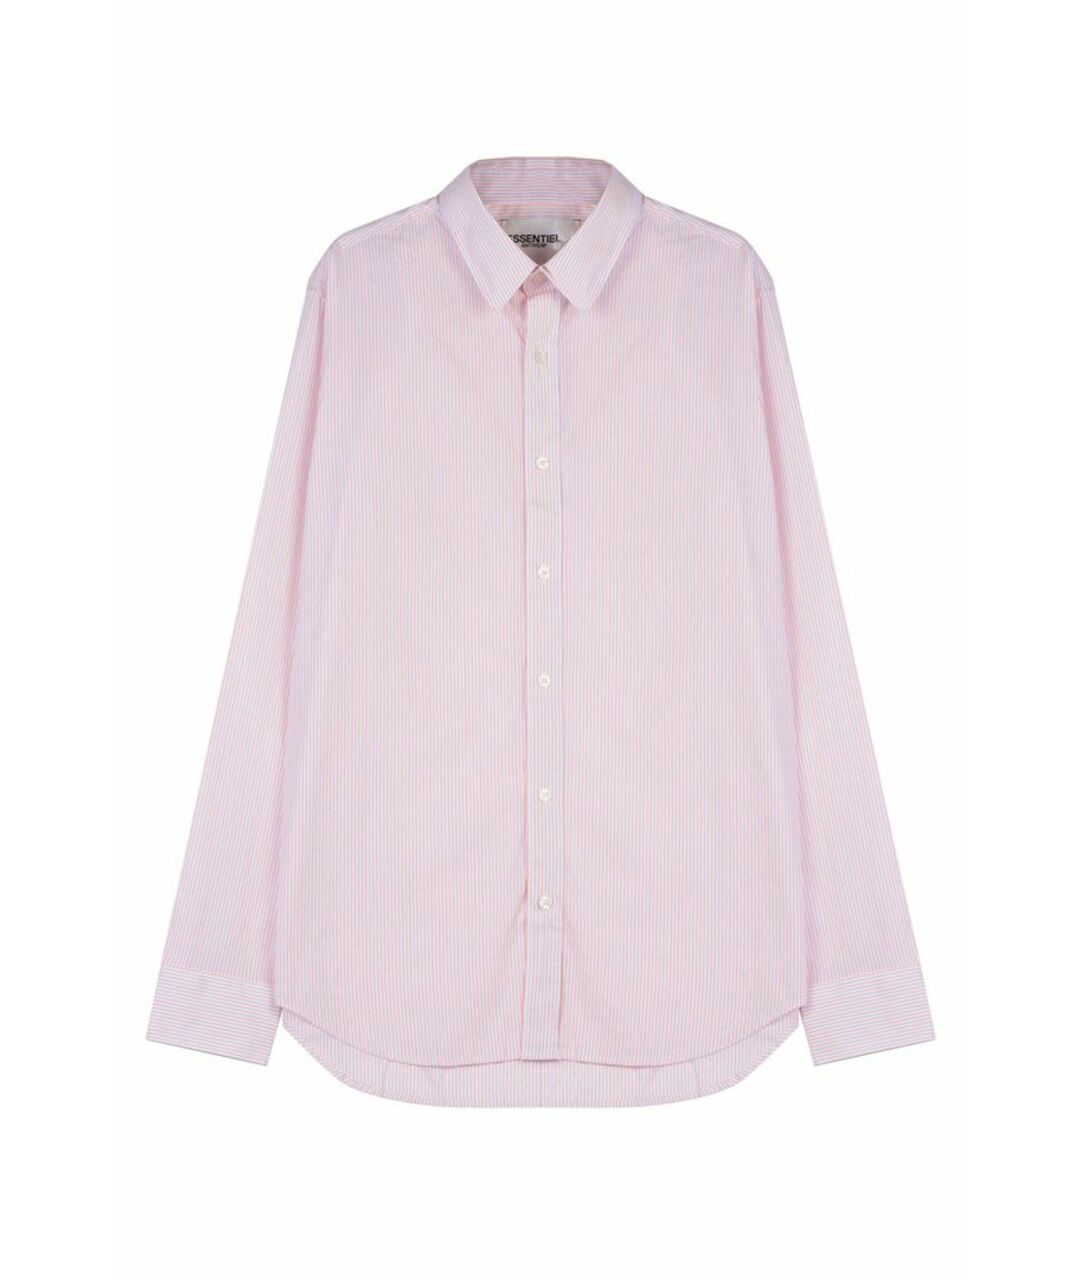 ESSENTIAL Розовая хлопковая классическая рубашка, фото 1